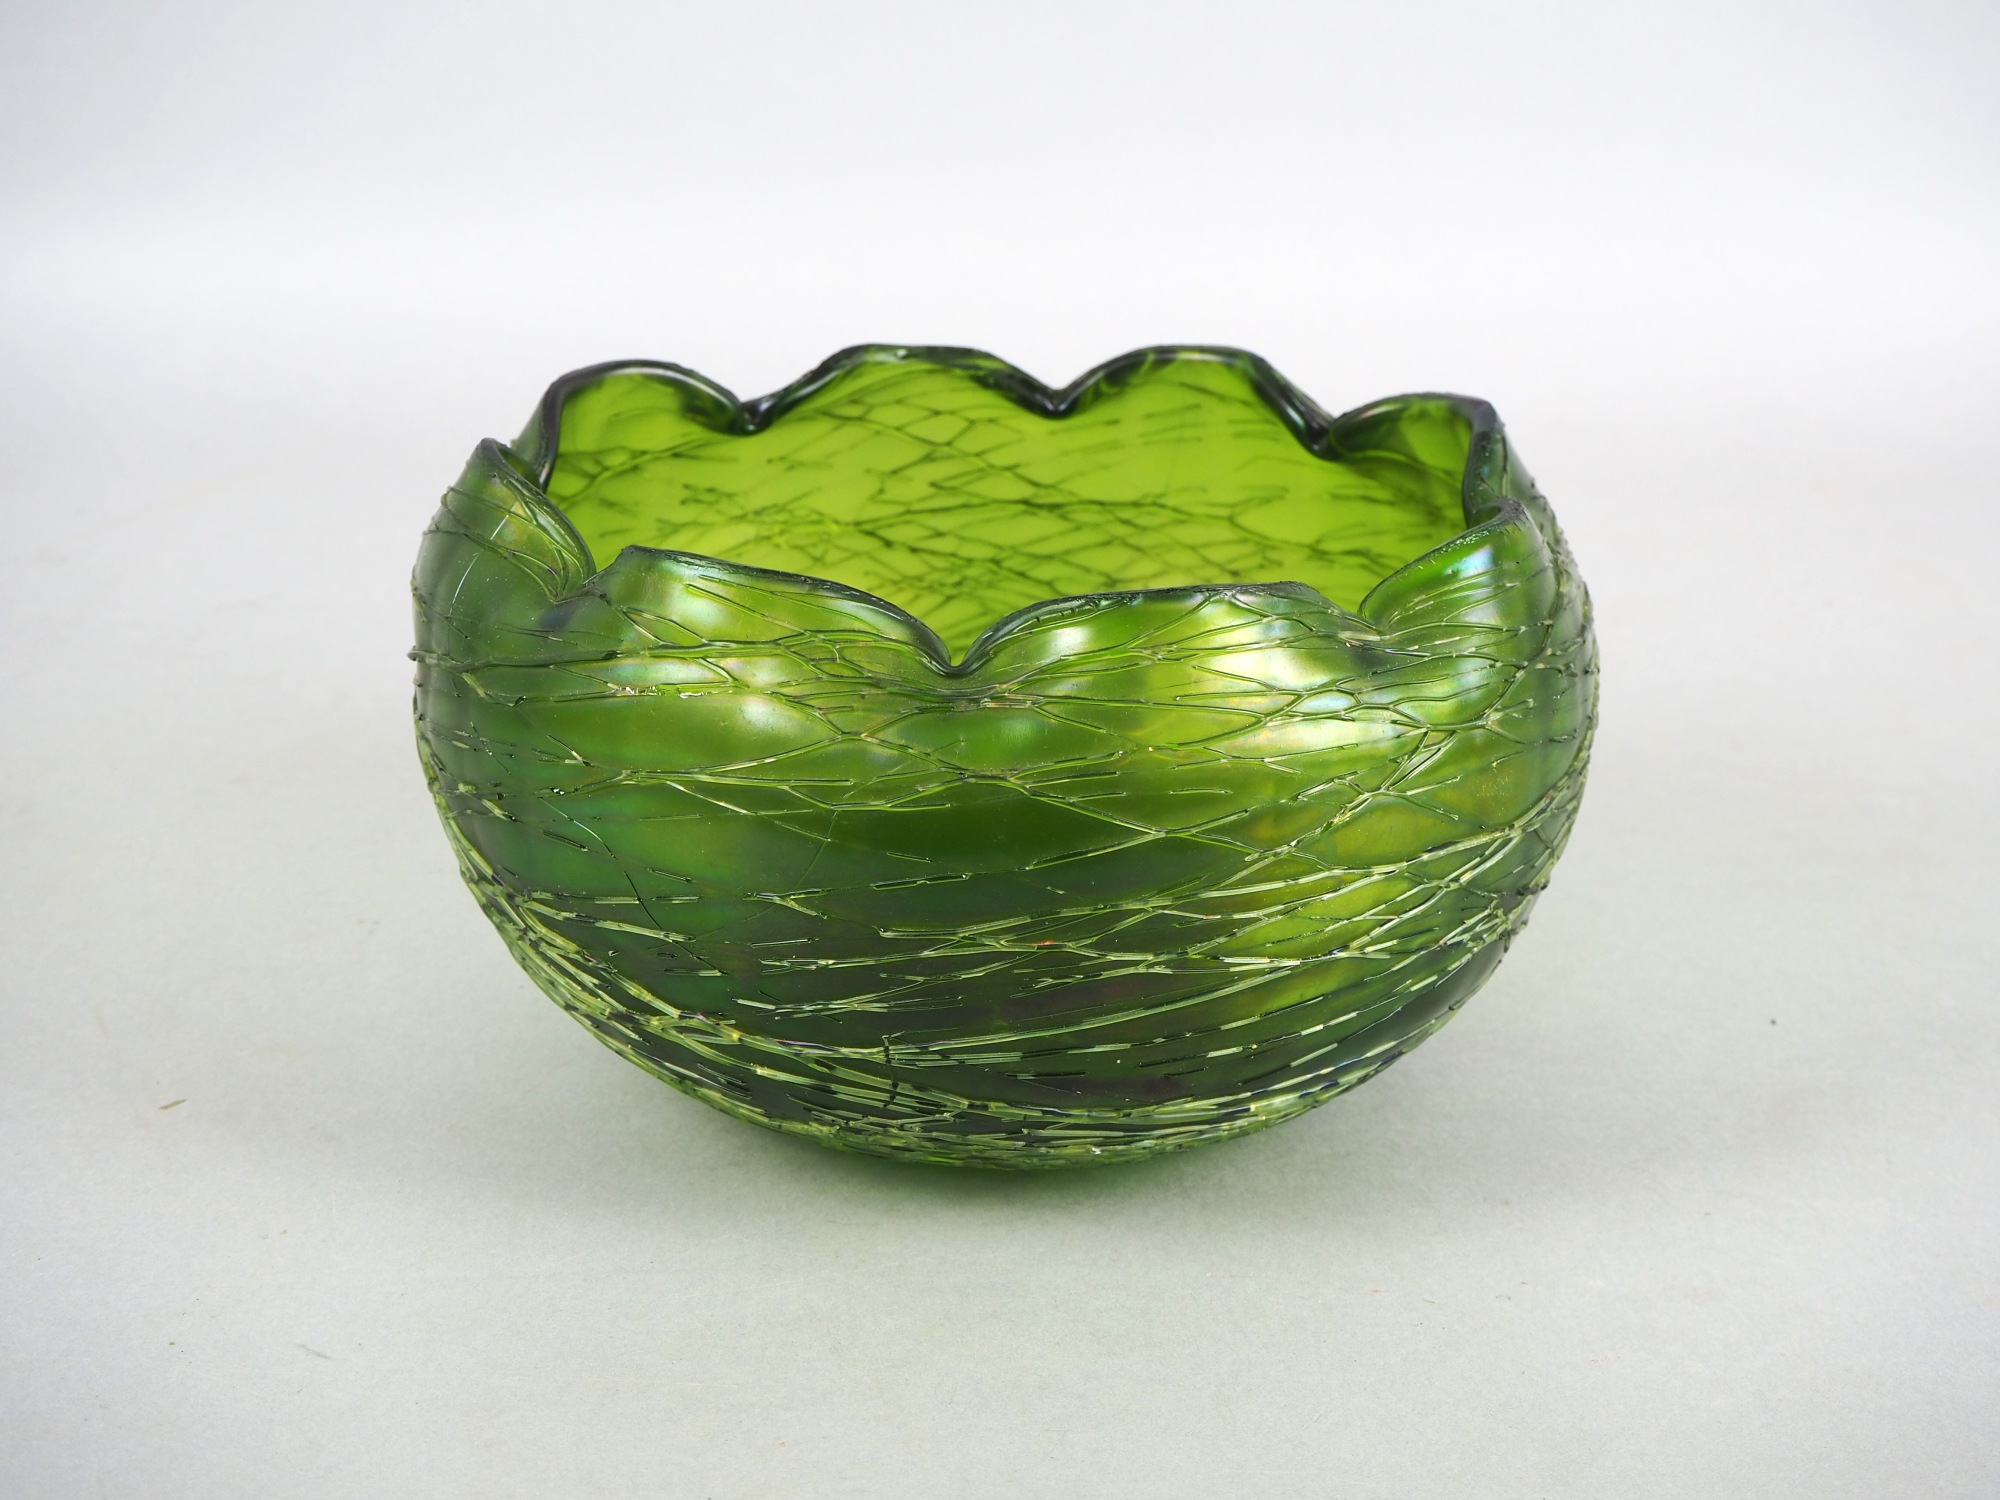 Glass bowl "Loetz", around 1900.